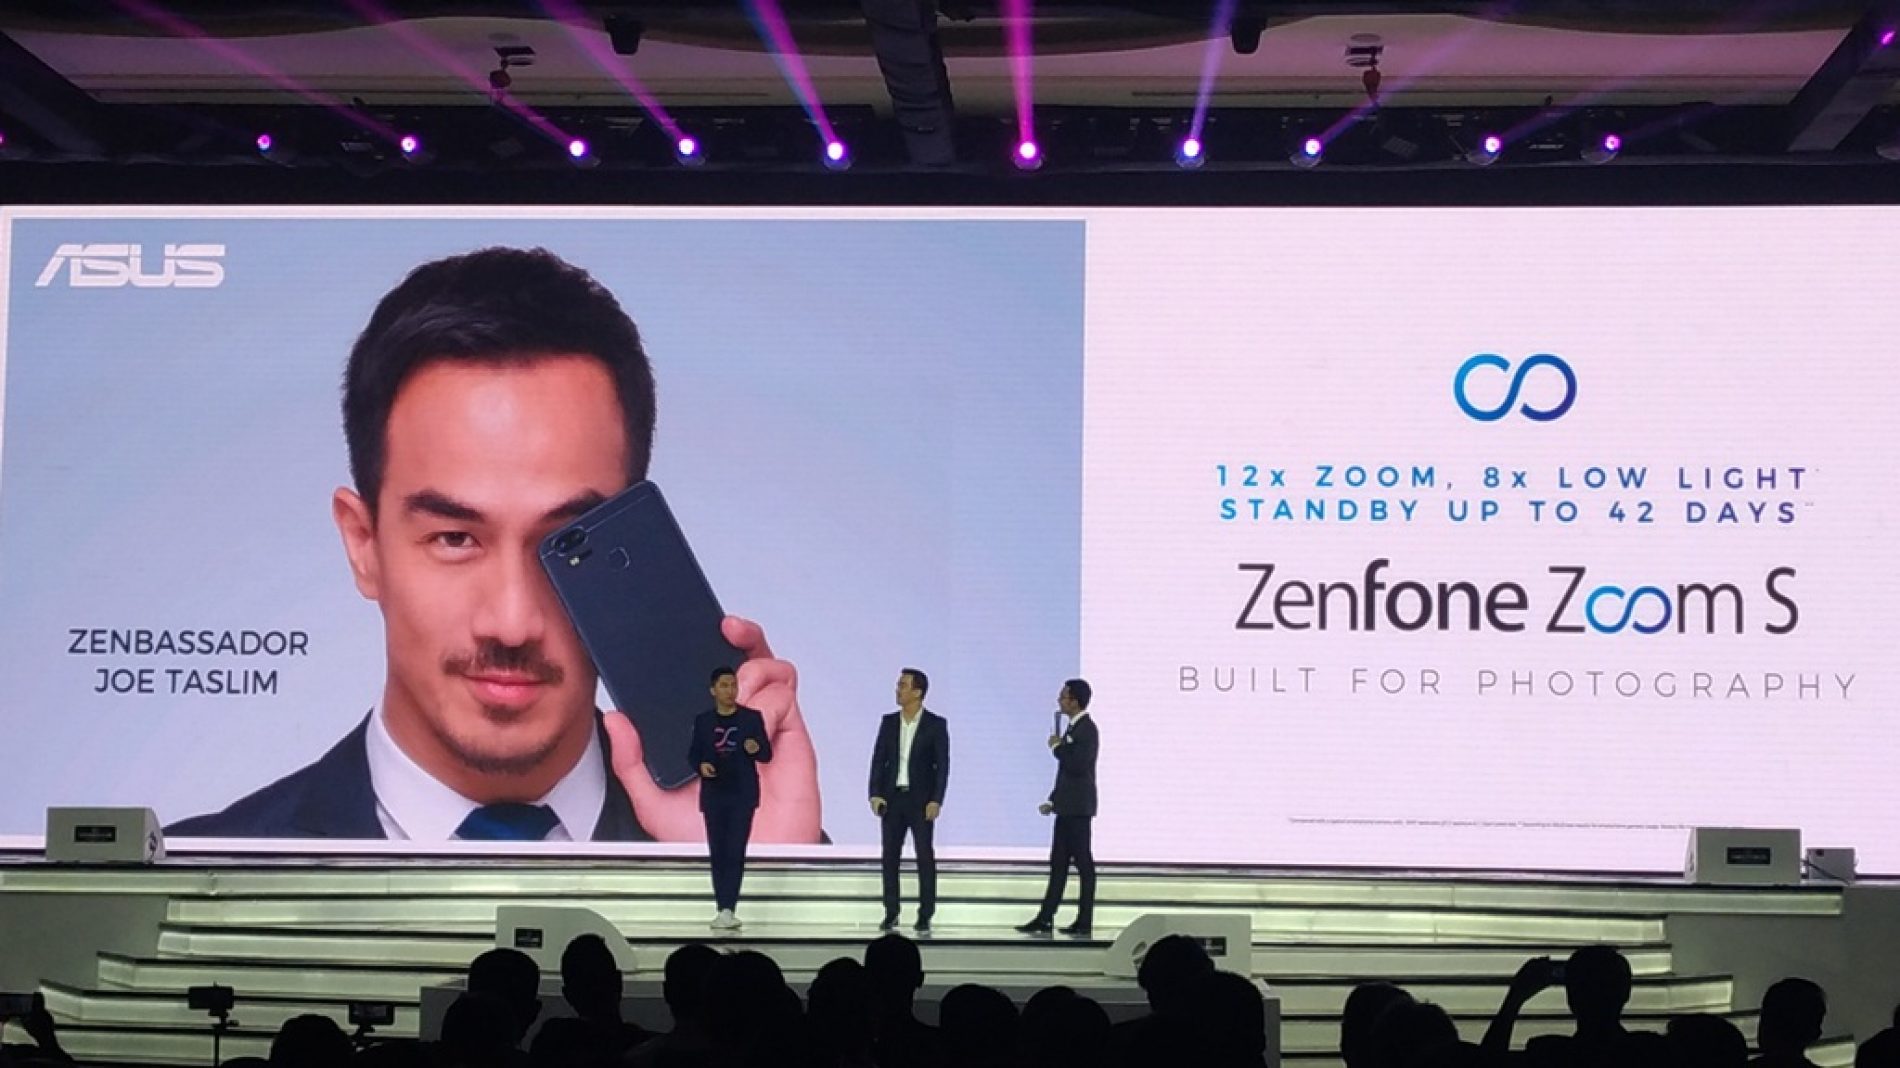 ASUS ZenFone Zoom S, Smartphone Fotografi Dengan Fitur Optik Dual-Lensa